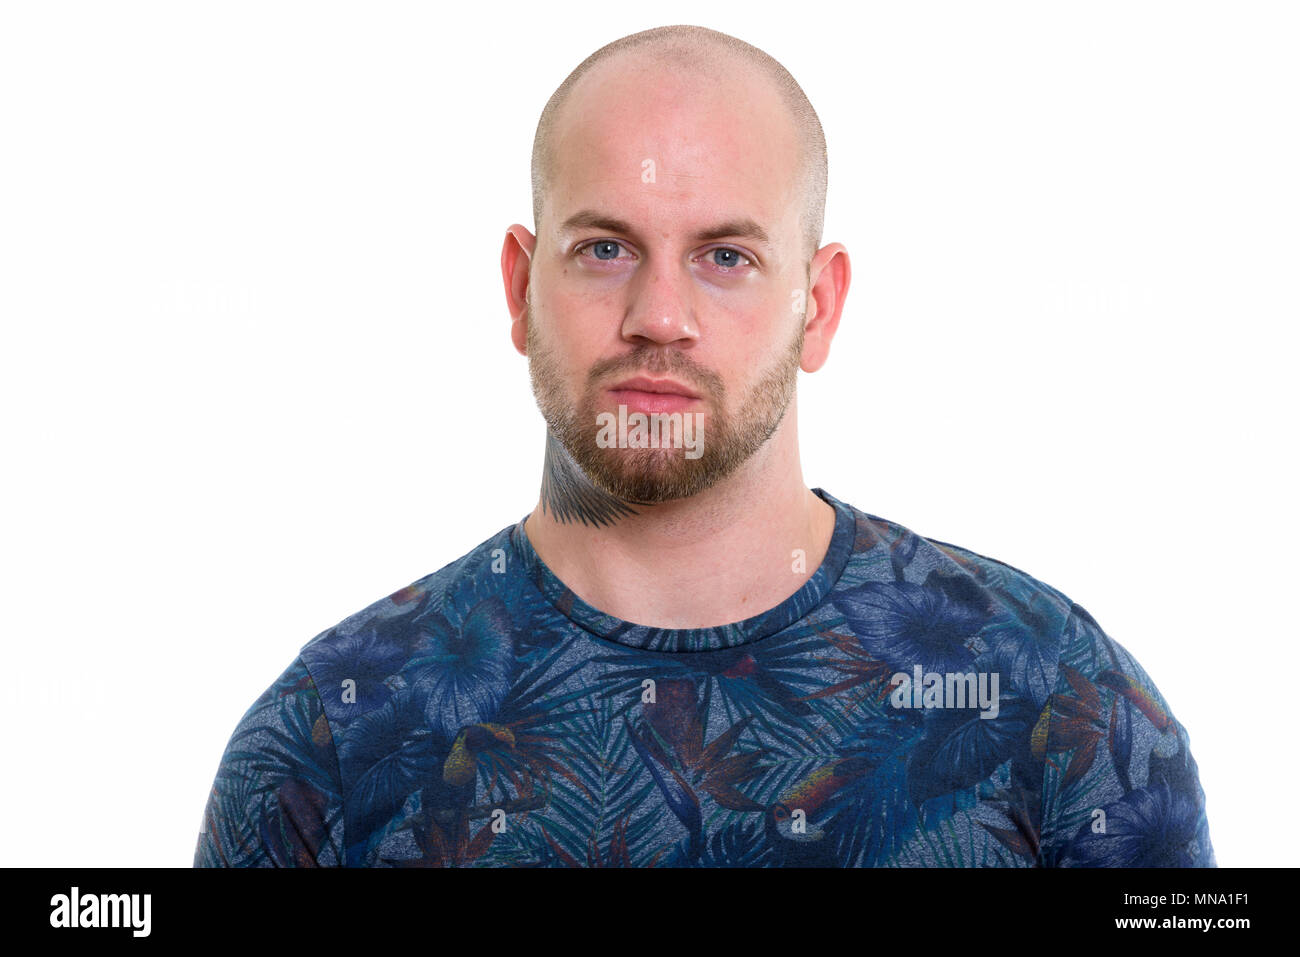 Young bald muscular man Stock Photo